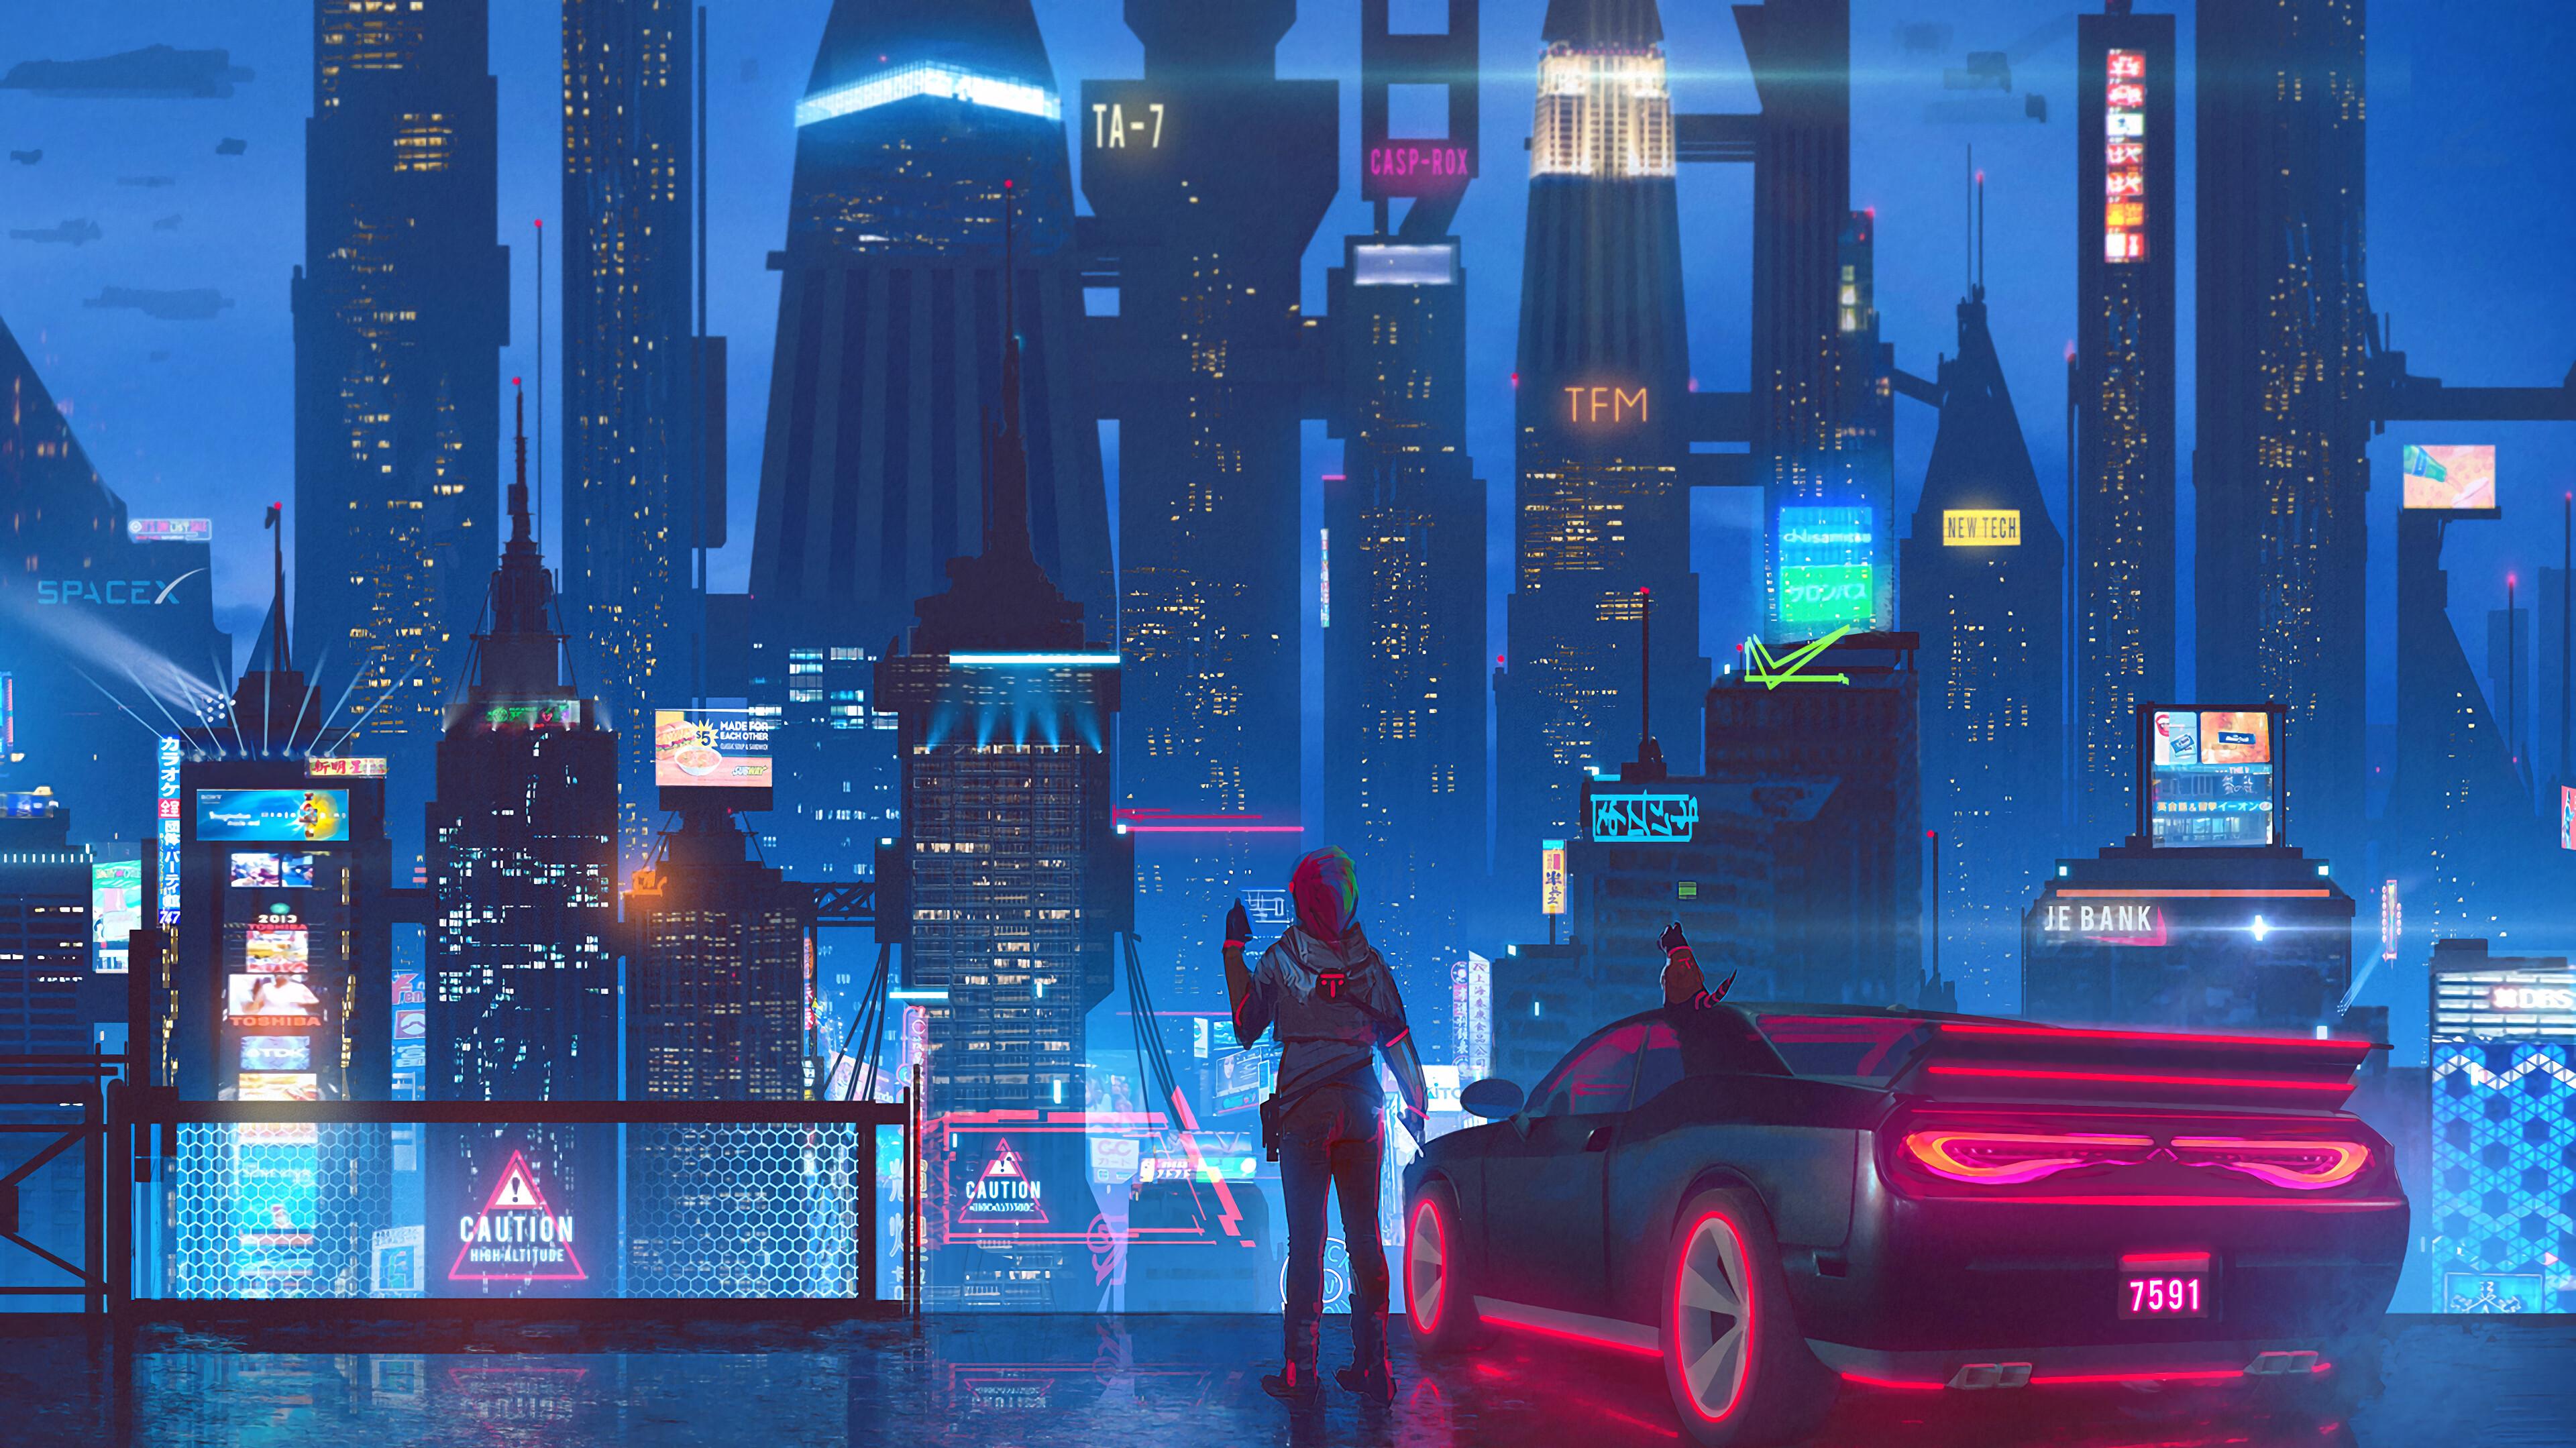 Cyberpunk 2077 Night City Concept Art 4K Wallpaper #3.2258